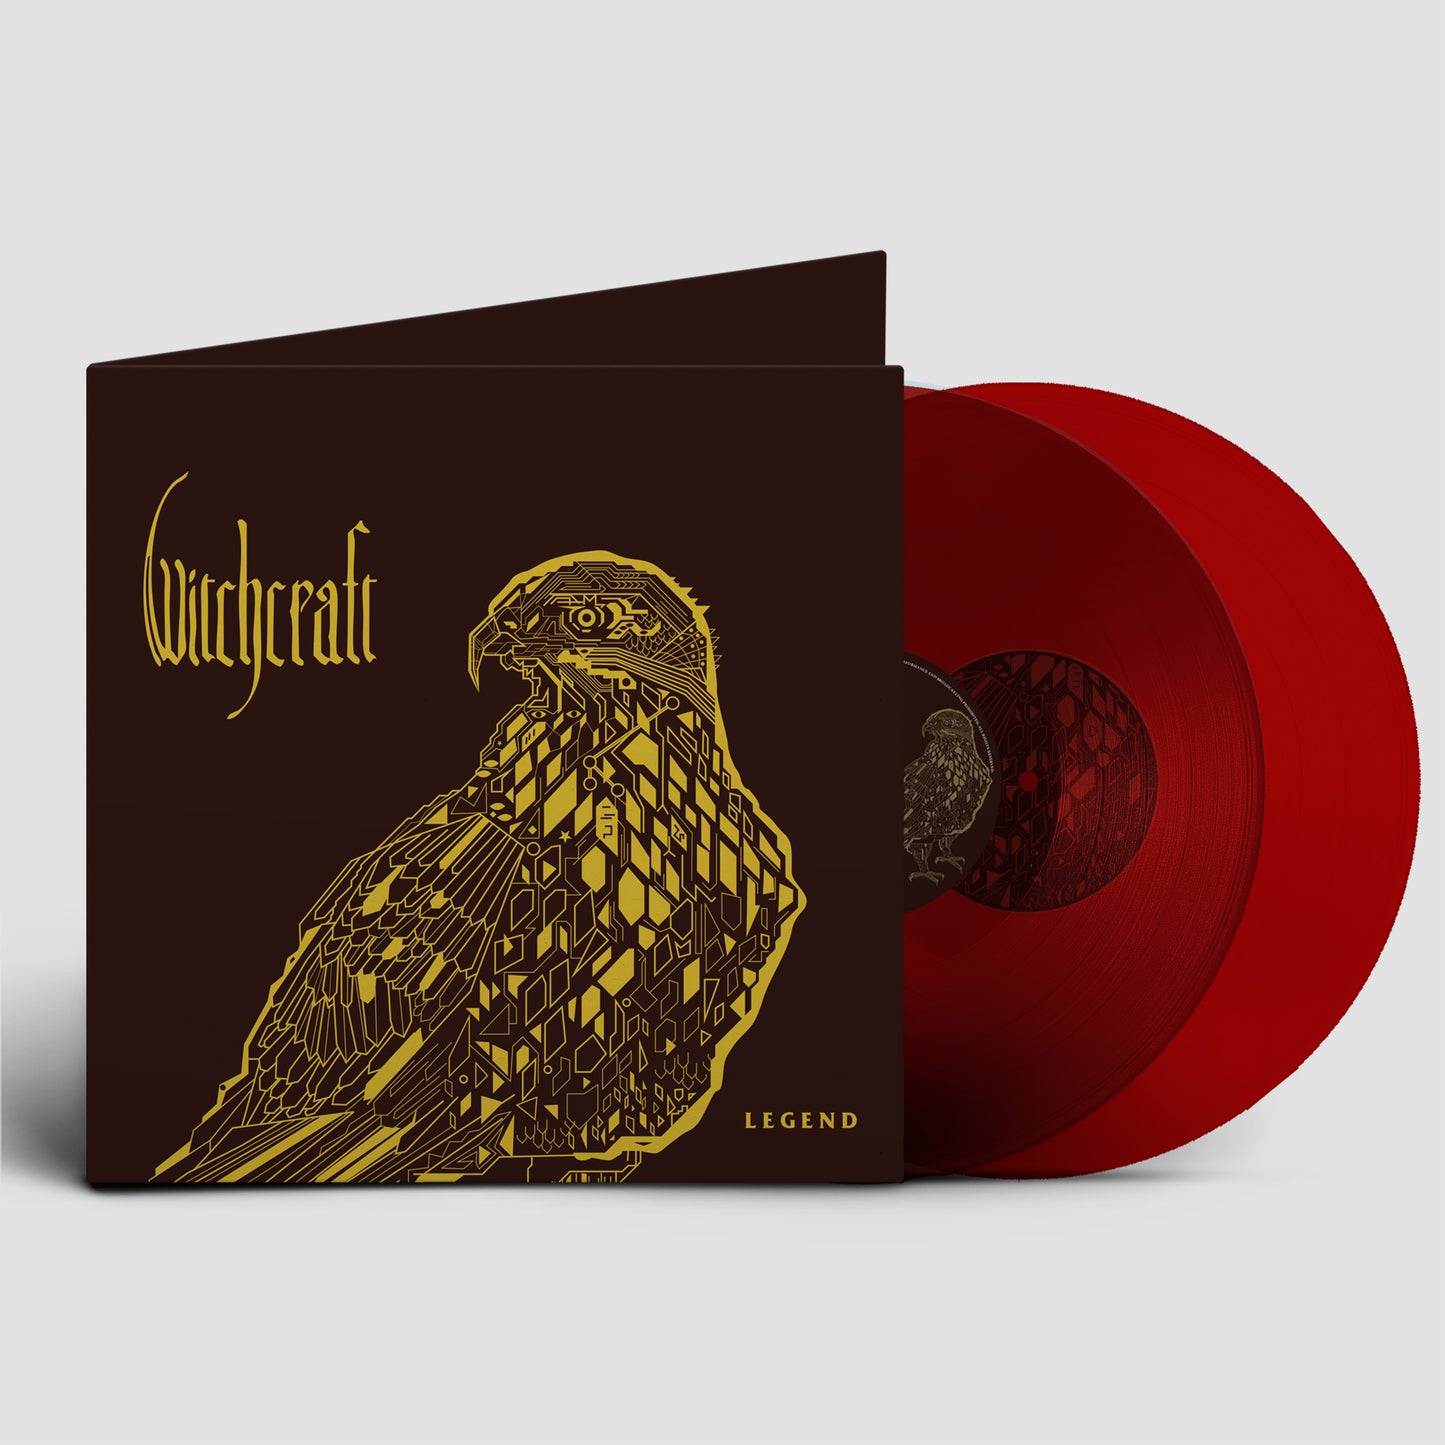 Witchcraft - Legend 2xLP - Red Vinyl